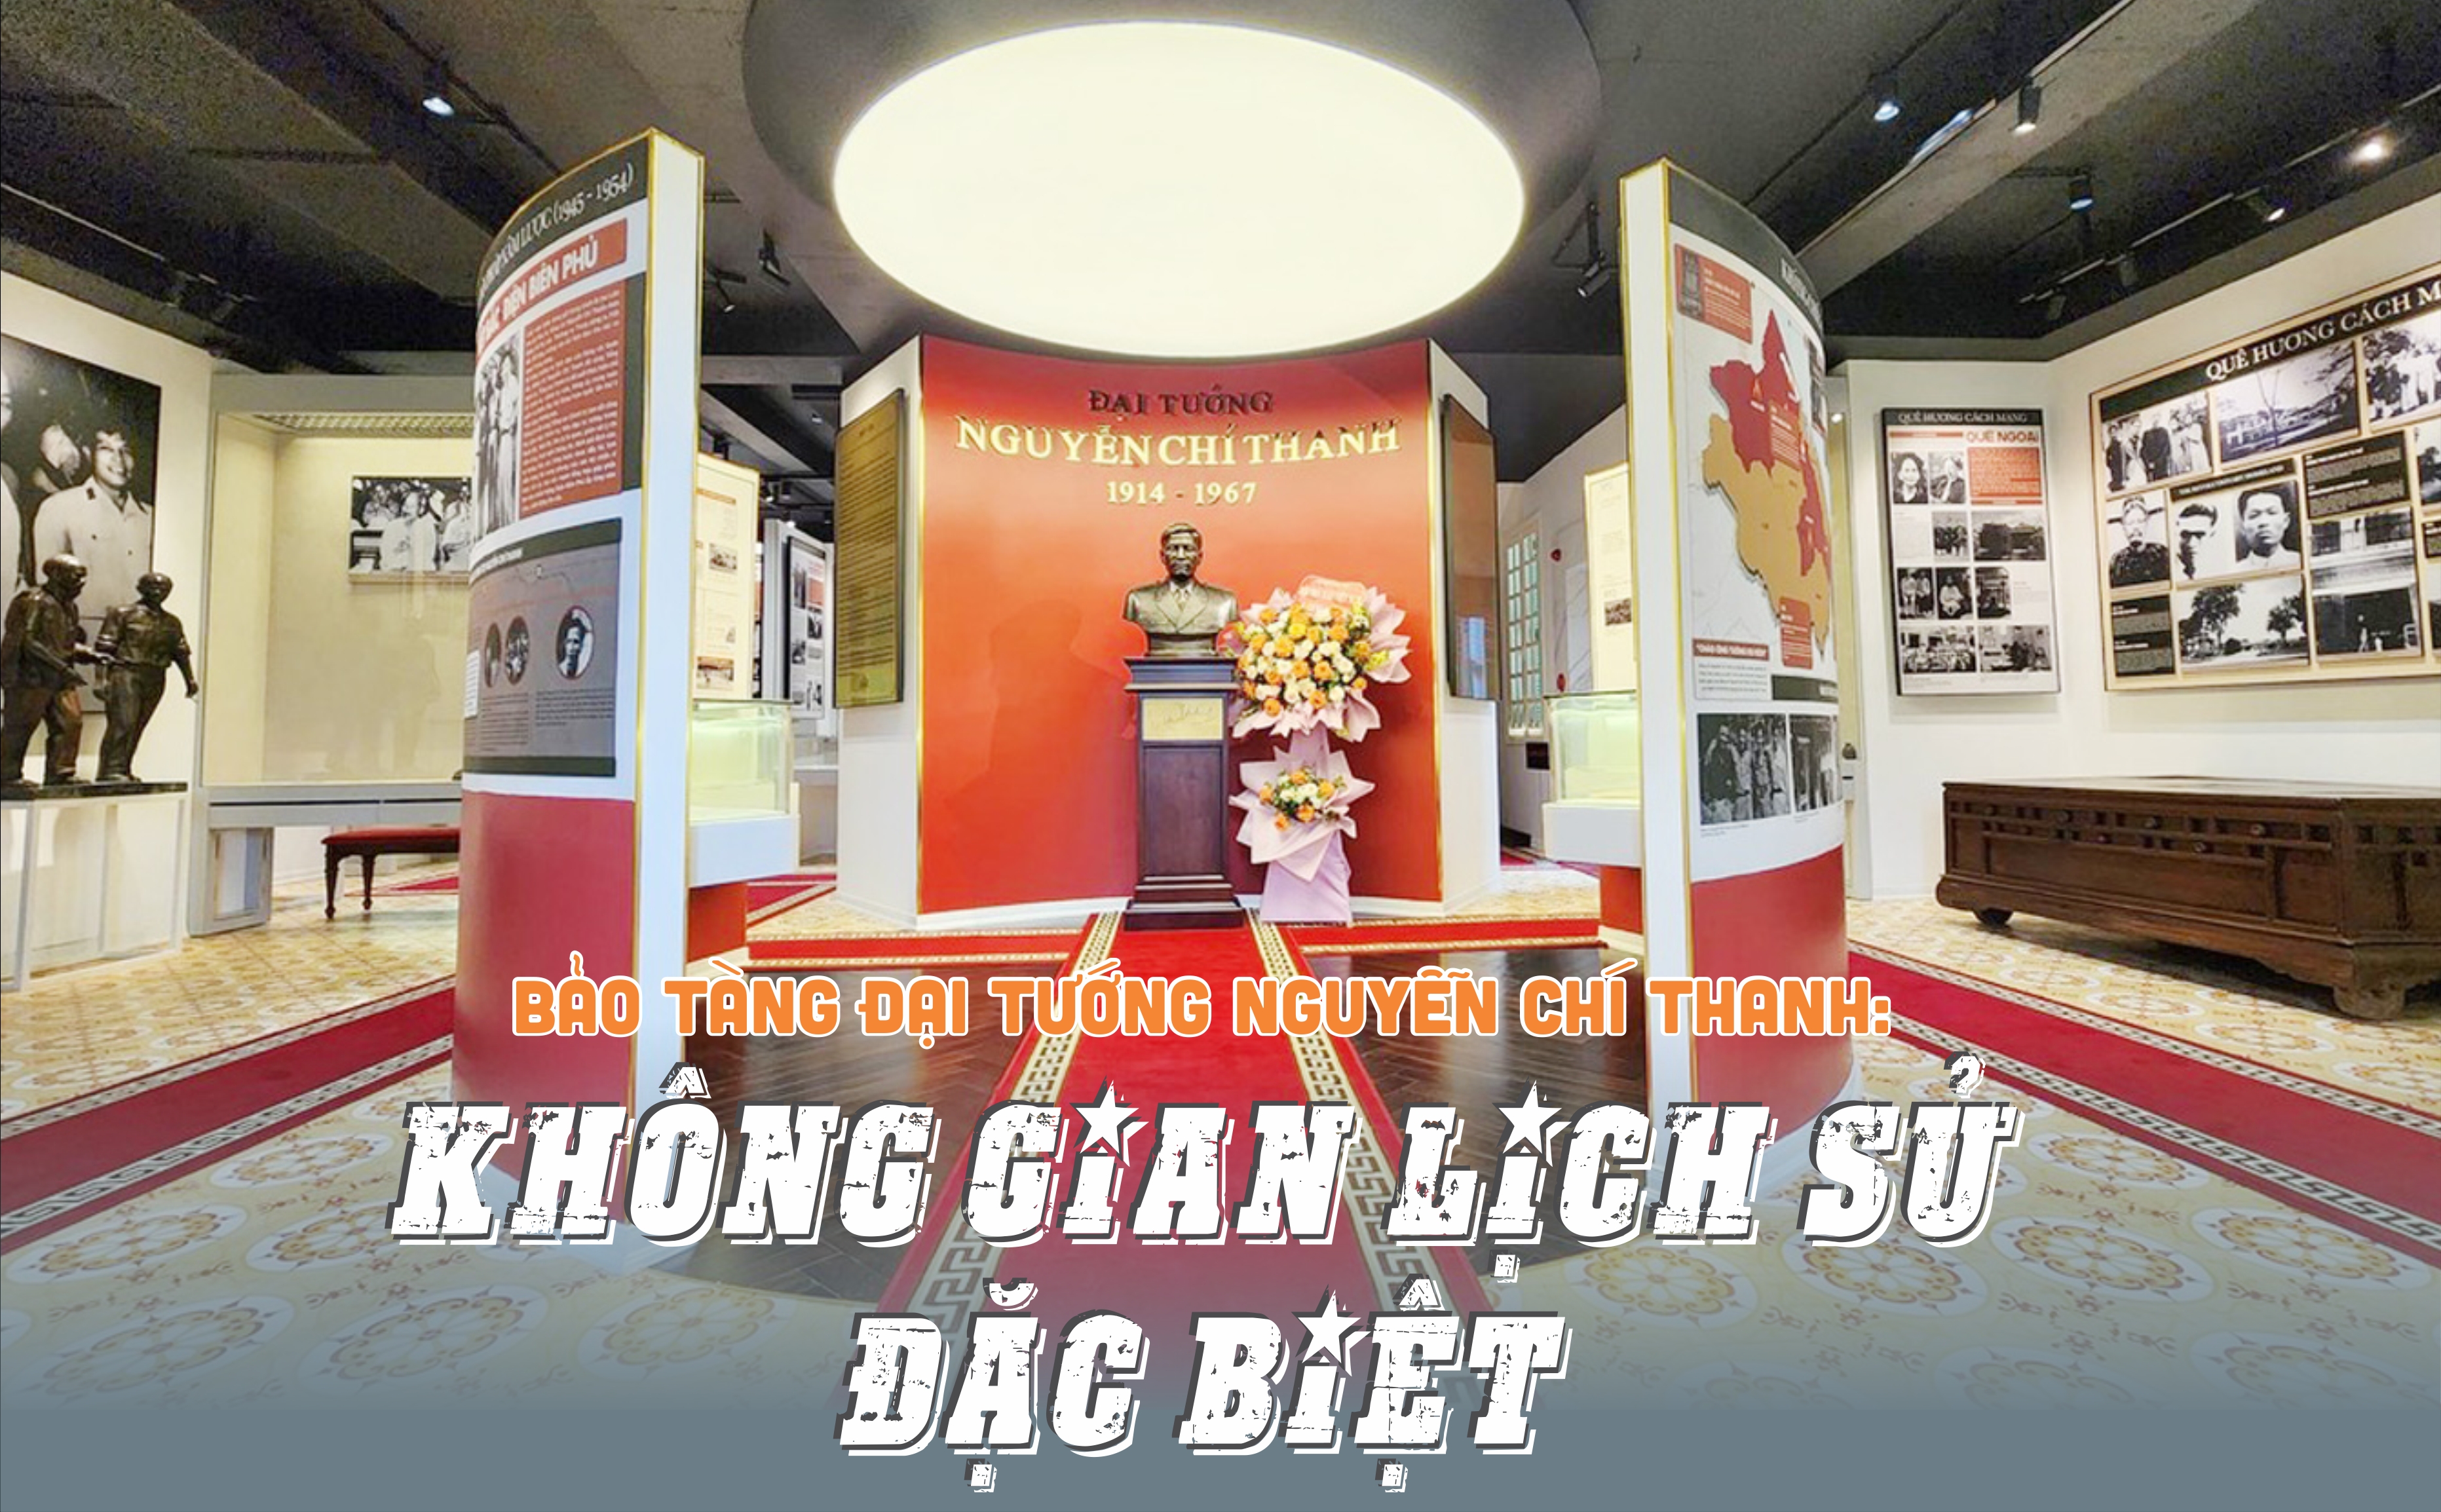 Bảo tàng Đại tướng Nguyễn Chí Thanh: Không gian lịch sử đặc biệt